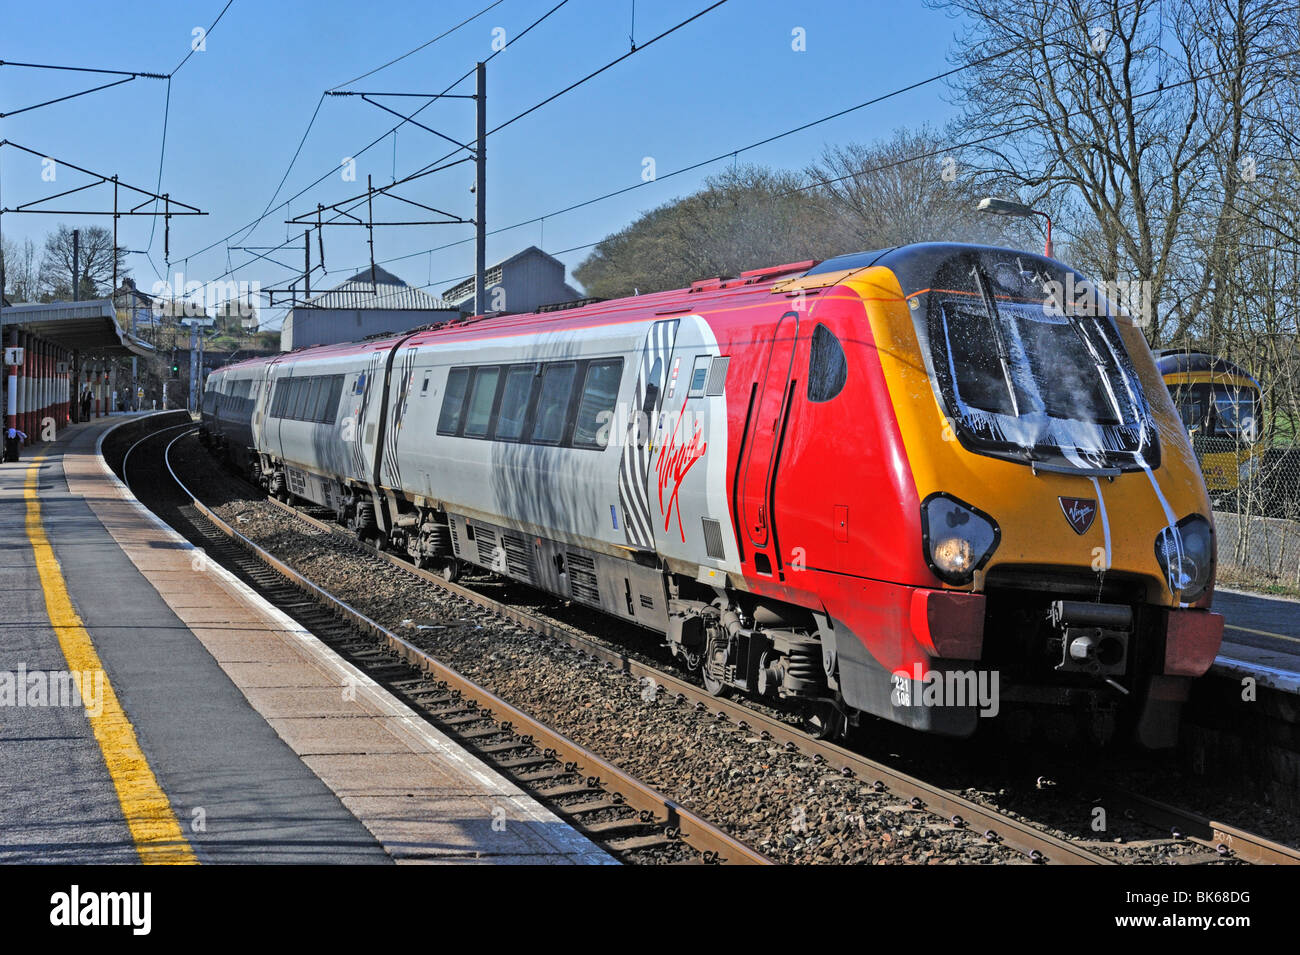 Classe SuperVoyager Virgin Rail 221 numéro 221 106 'Willem Barents'. Oxenholme, Cumbria, Angleterre, Royaume-Uni, Europe. Banque D'Images